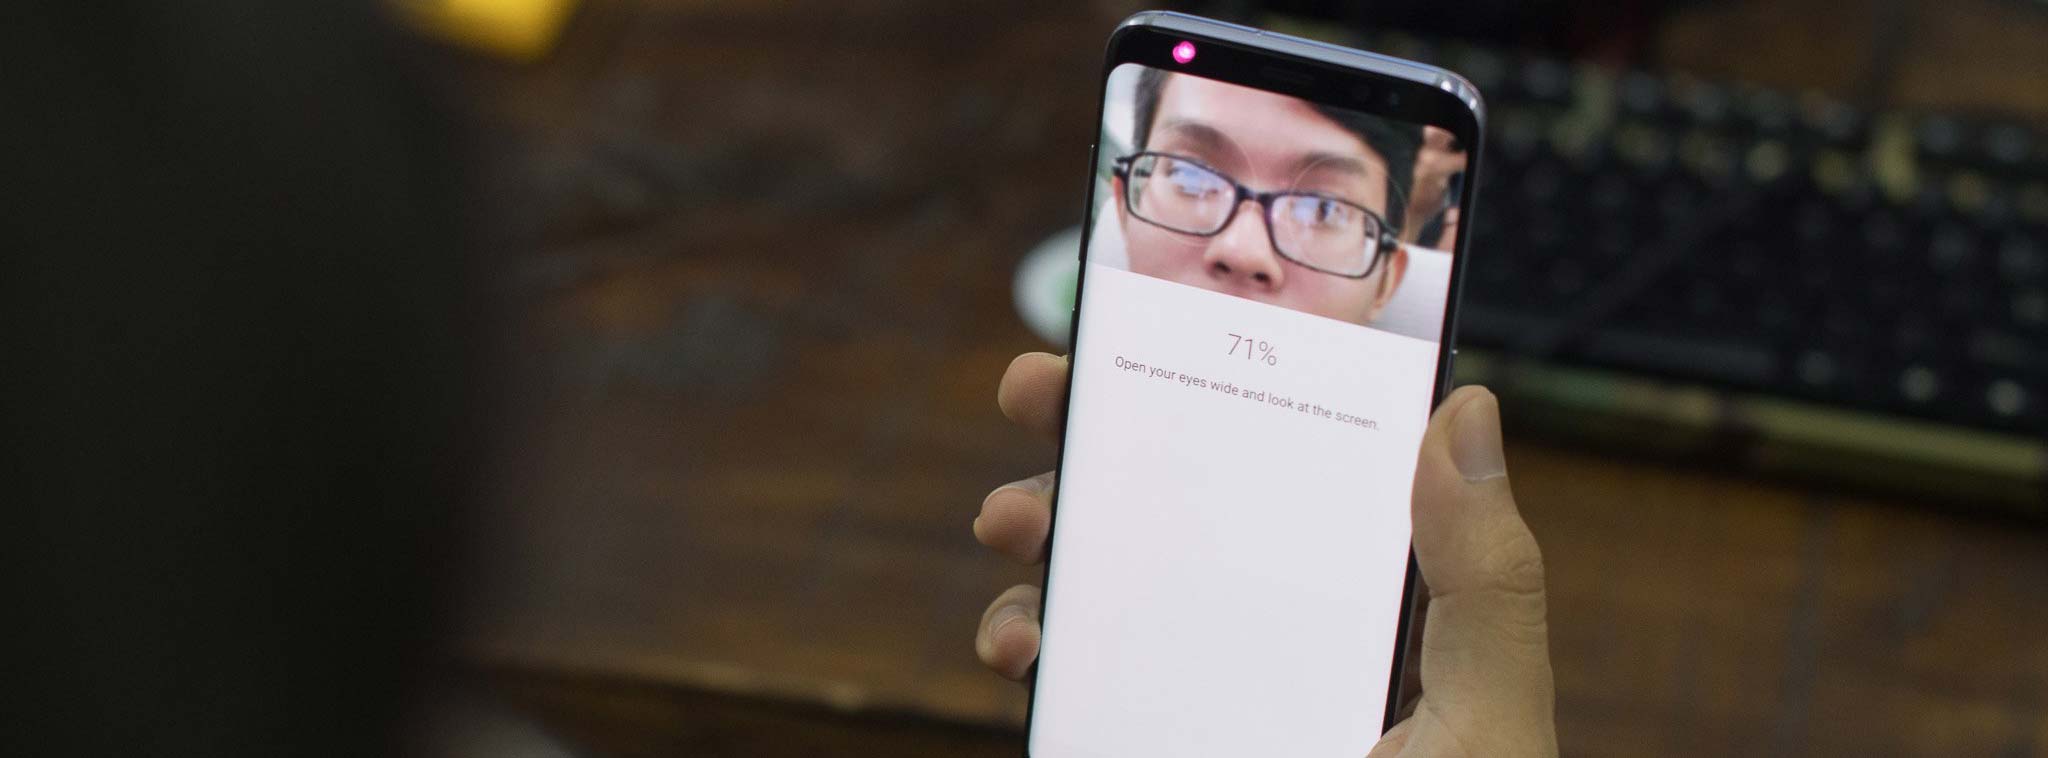 Galaxy S9 có tính năng Intelligent Scan, kết hợp quét mống mắt và nhận diện mặt để mở khóa tốt hơn?